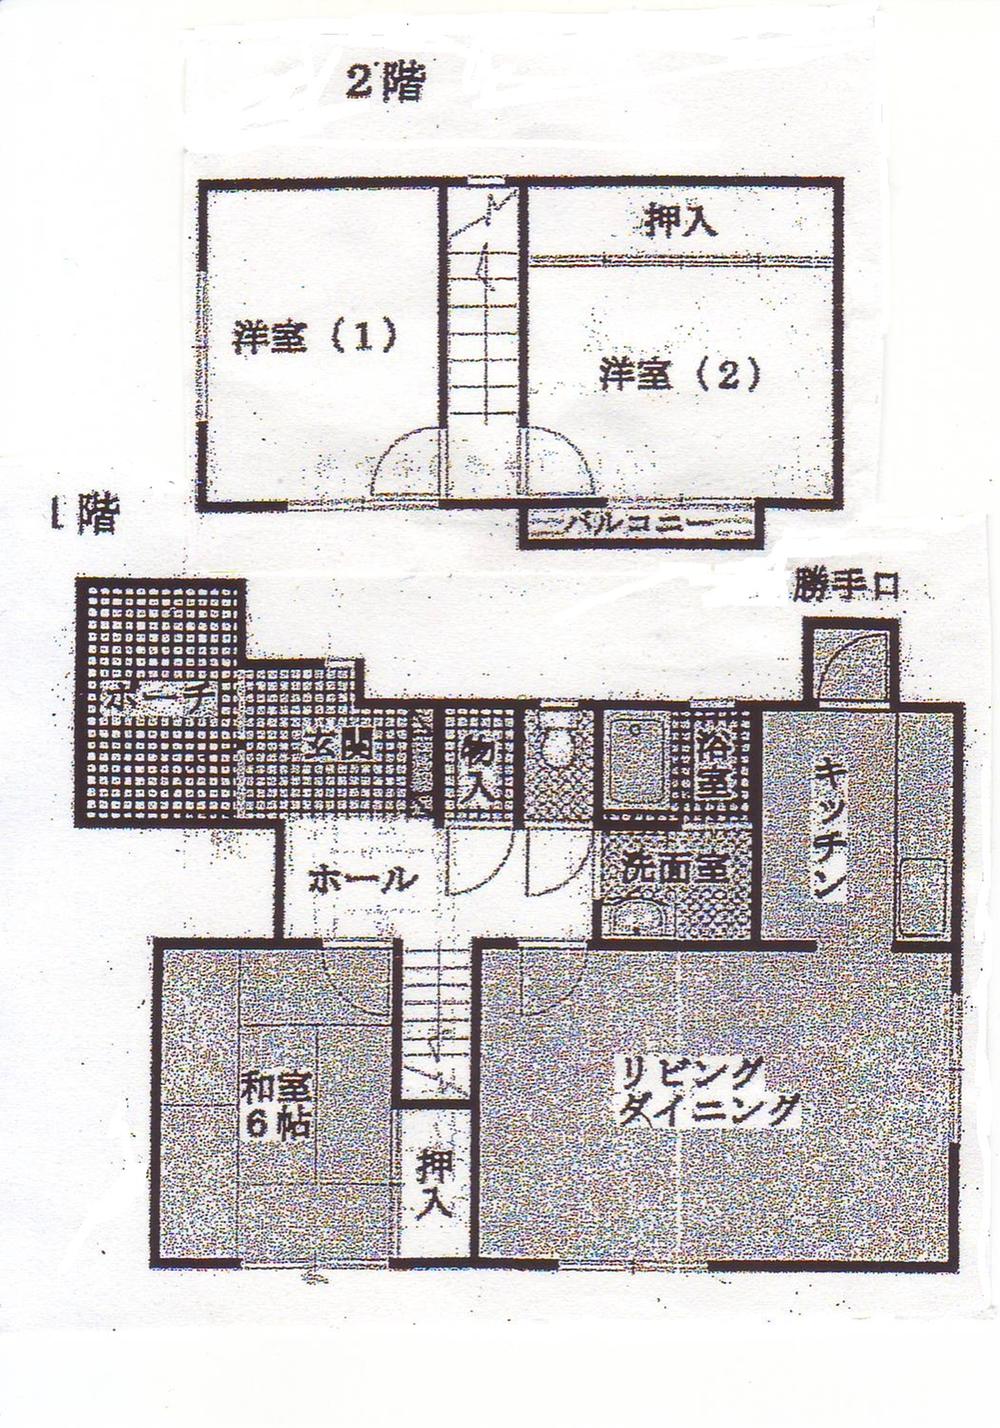 Floor plan. 12.7 million yen, 4K, Land area 171.6 sq m , Building area 81.87 sq m